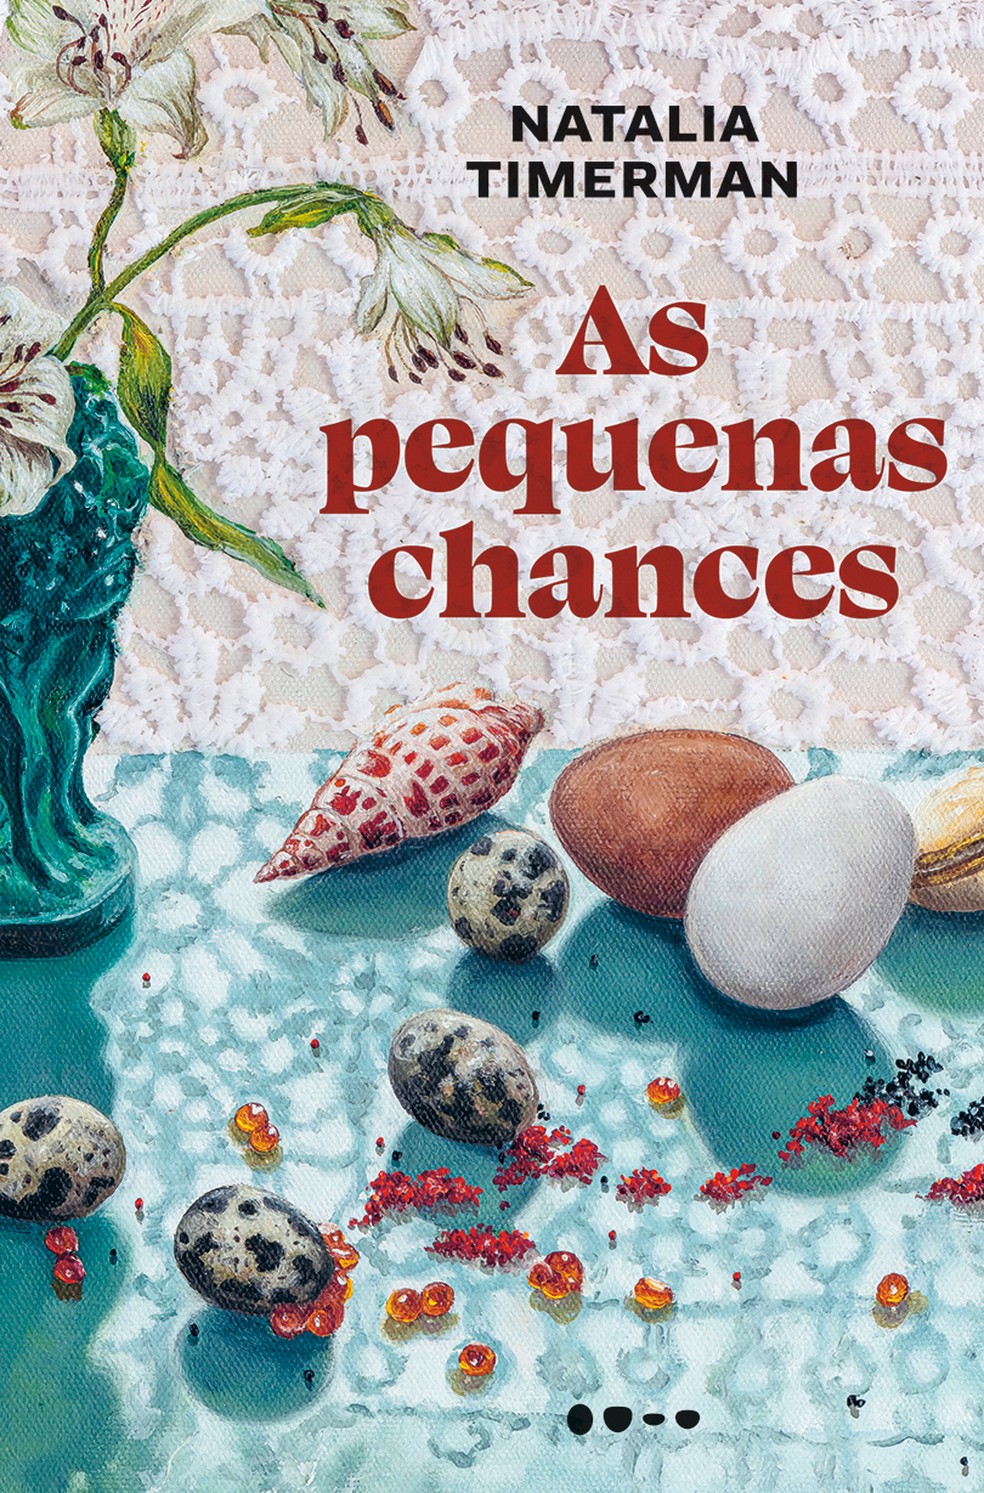 Capa de "As pequenas chances", novo romance da escritora Natalia Timerman, lançado pela editora Todavia — Foto: Reprodução